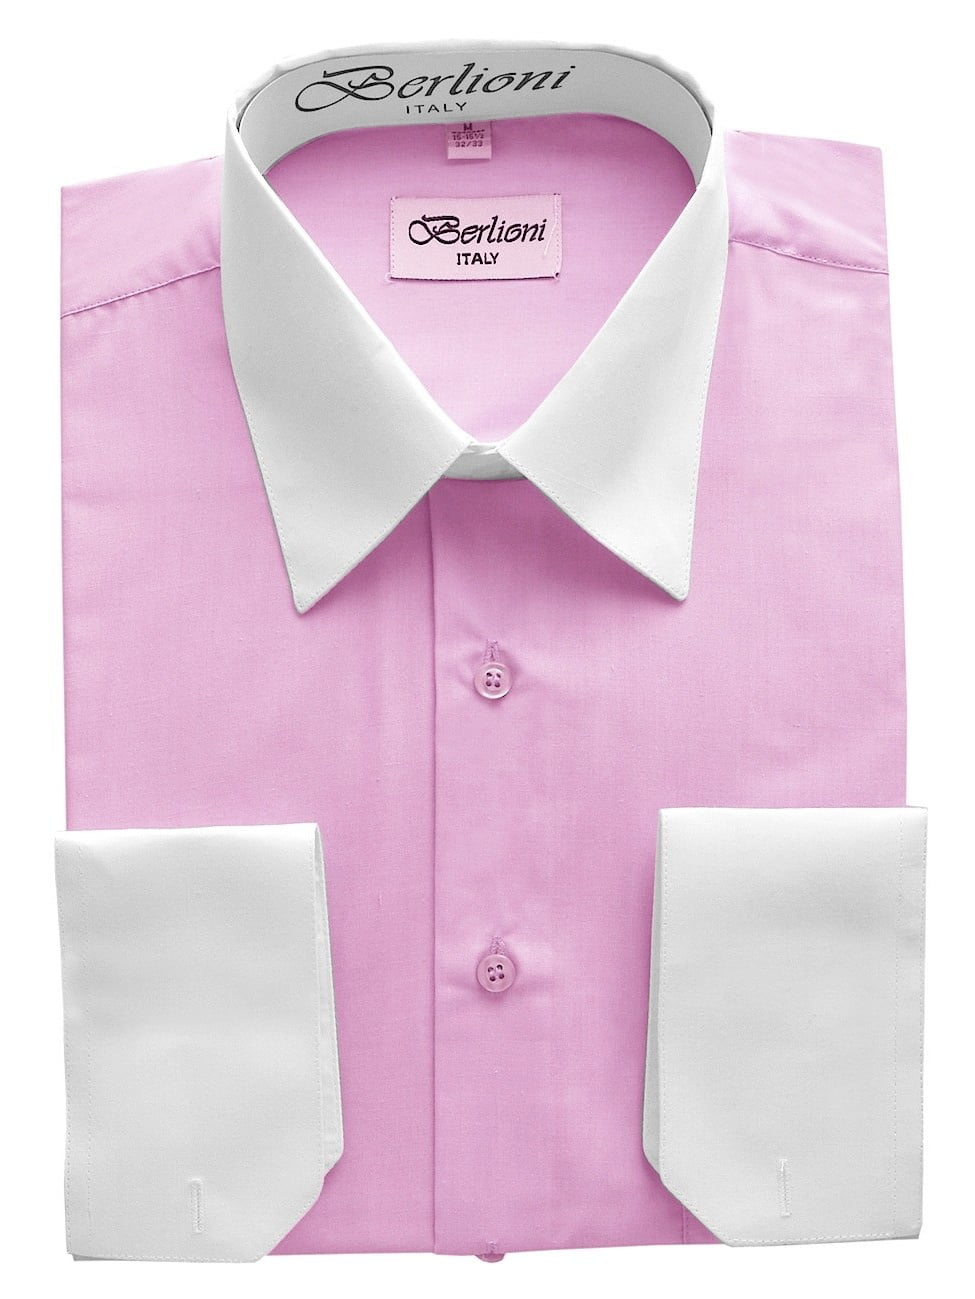 Berlioni Men's Long Sleeve Two Tone Dress Shirt Fuchsia